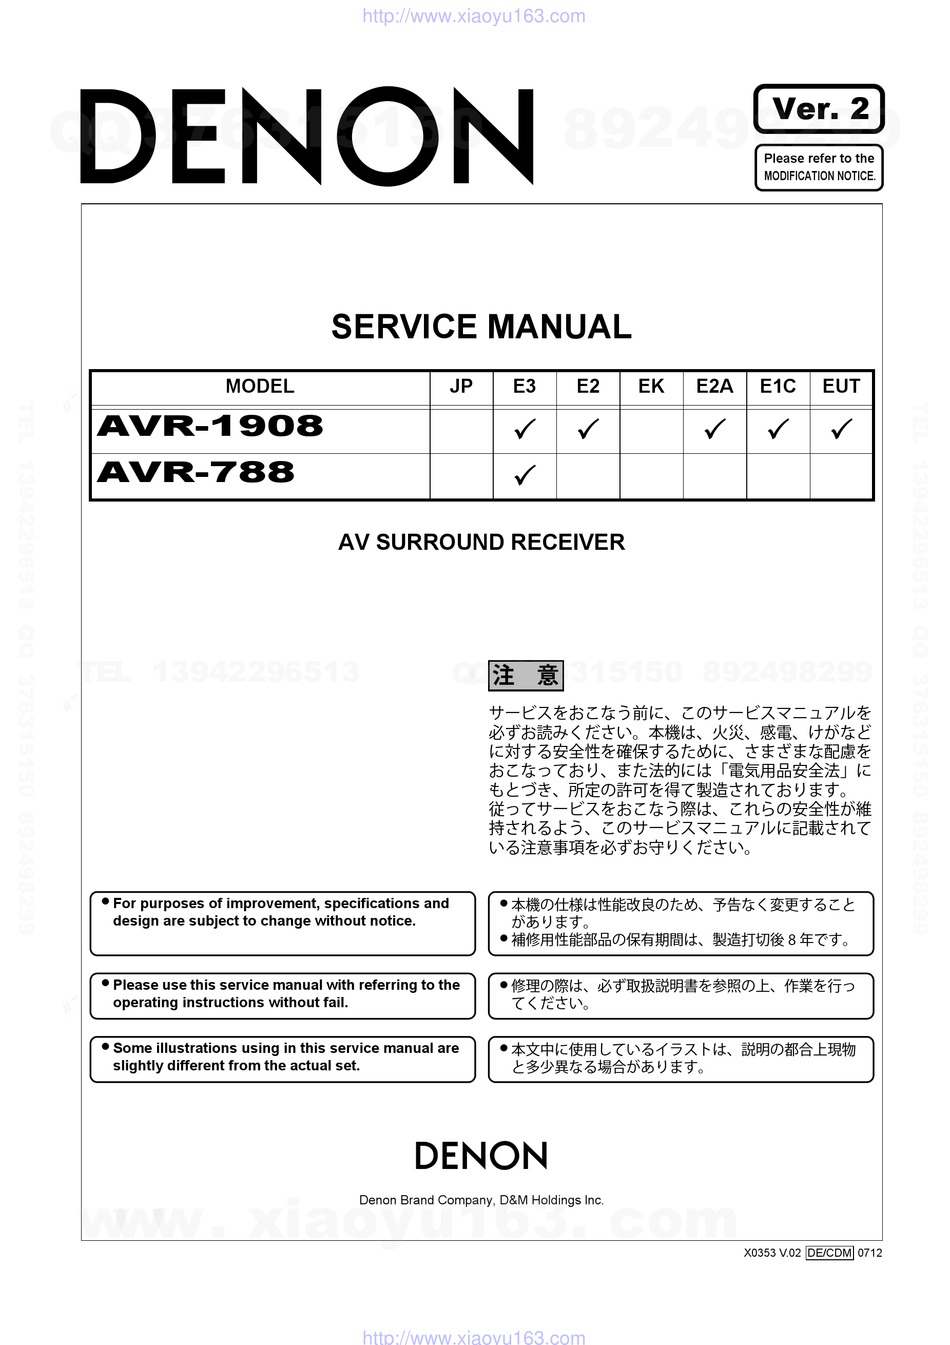 Bedienungsanleitung-Operating Instructions für Denon AVR-1908 